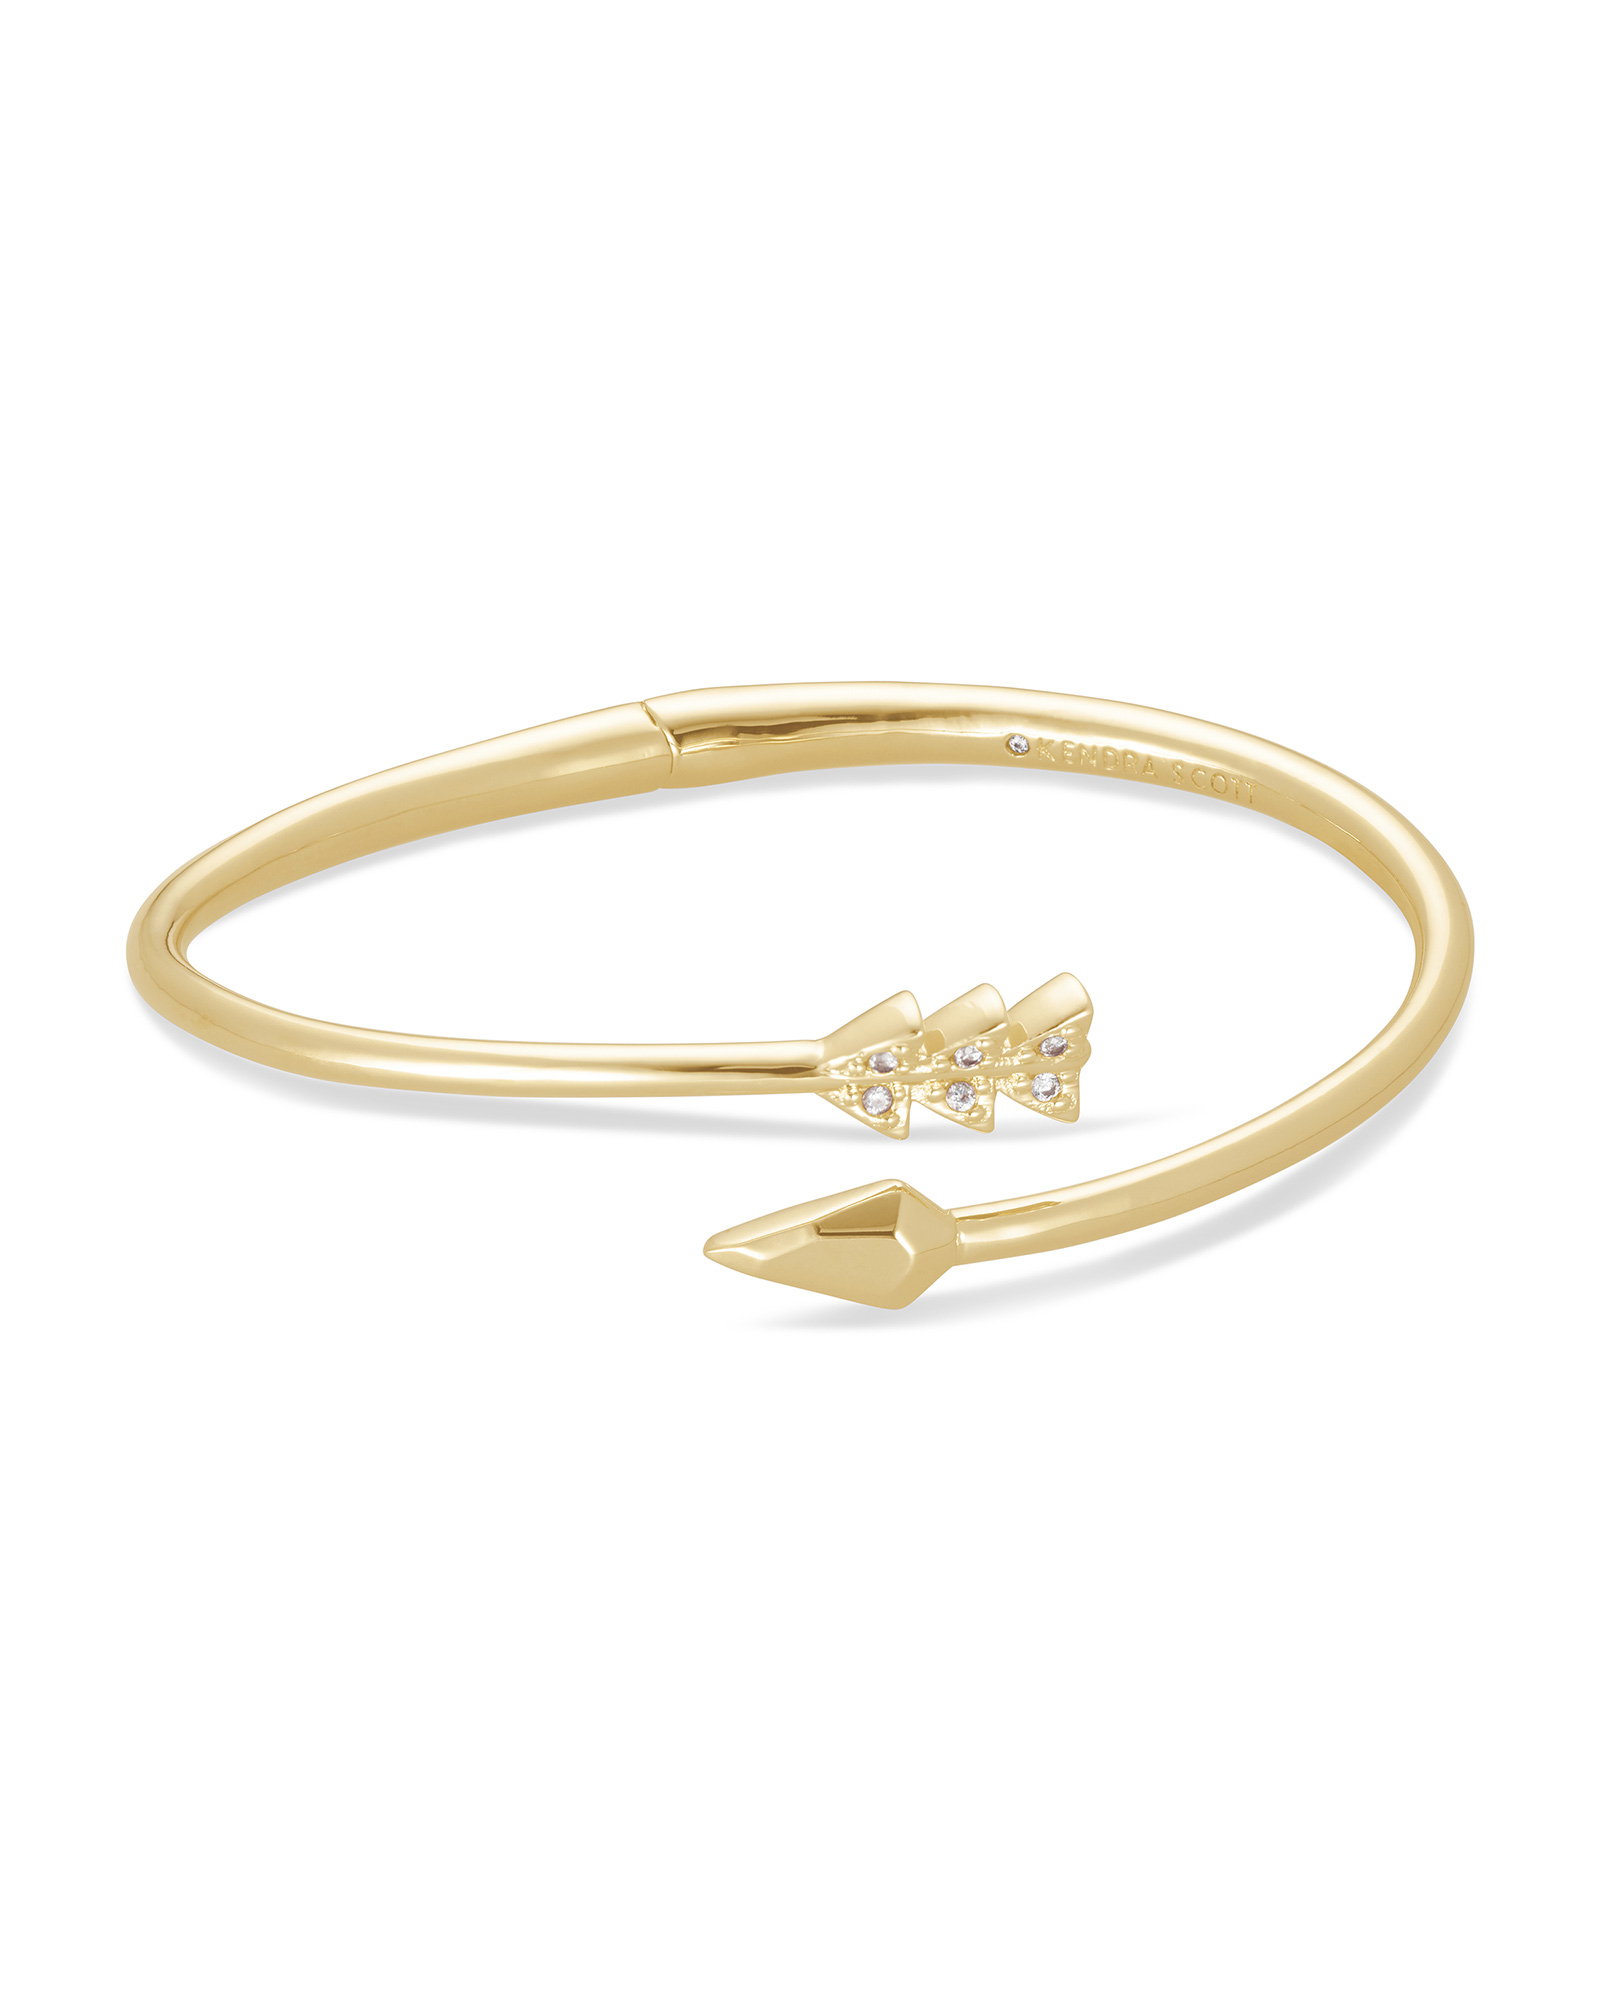 Minimal,Everyday Jewelry Gift CHENCAN01 Arrow Bangle,Arrow Bracelet,Gold Arrow Bracelet,Delicate Arrow Bracelet